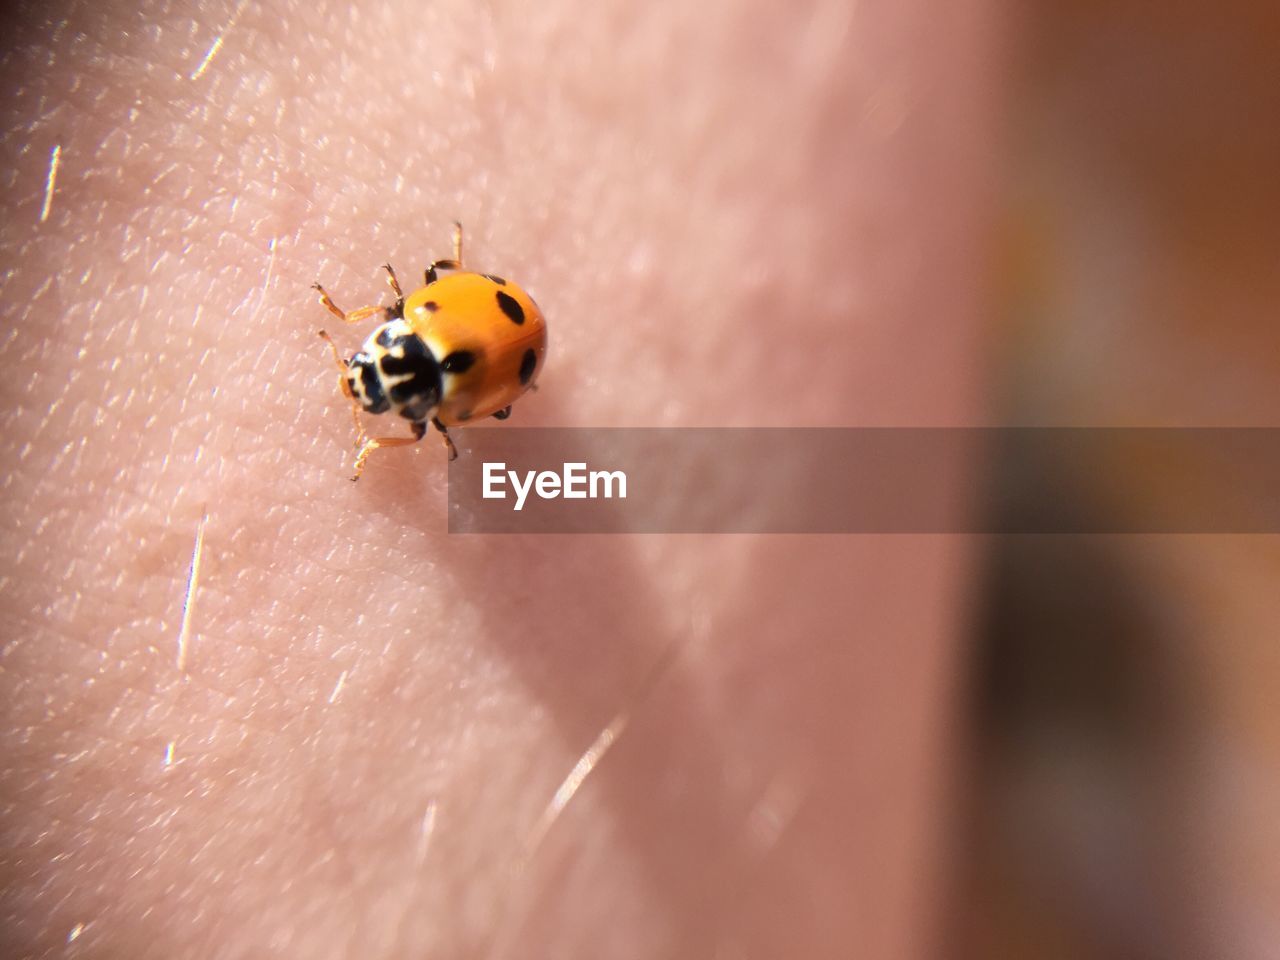 Close-up of ladybug on skin